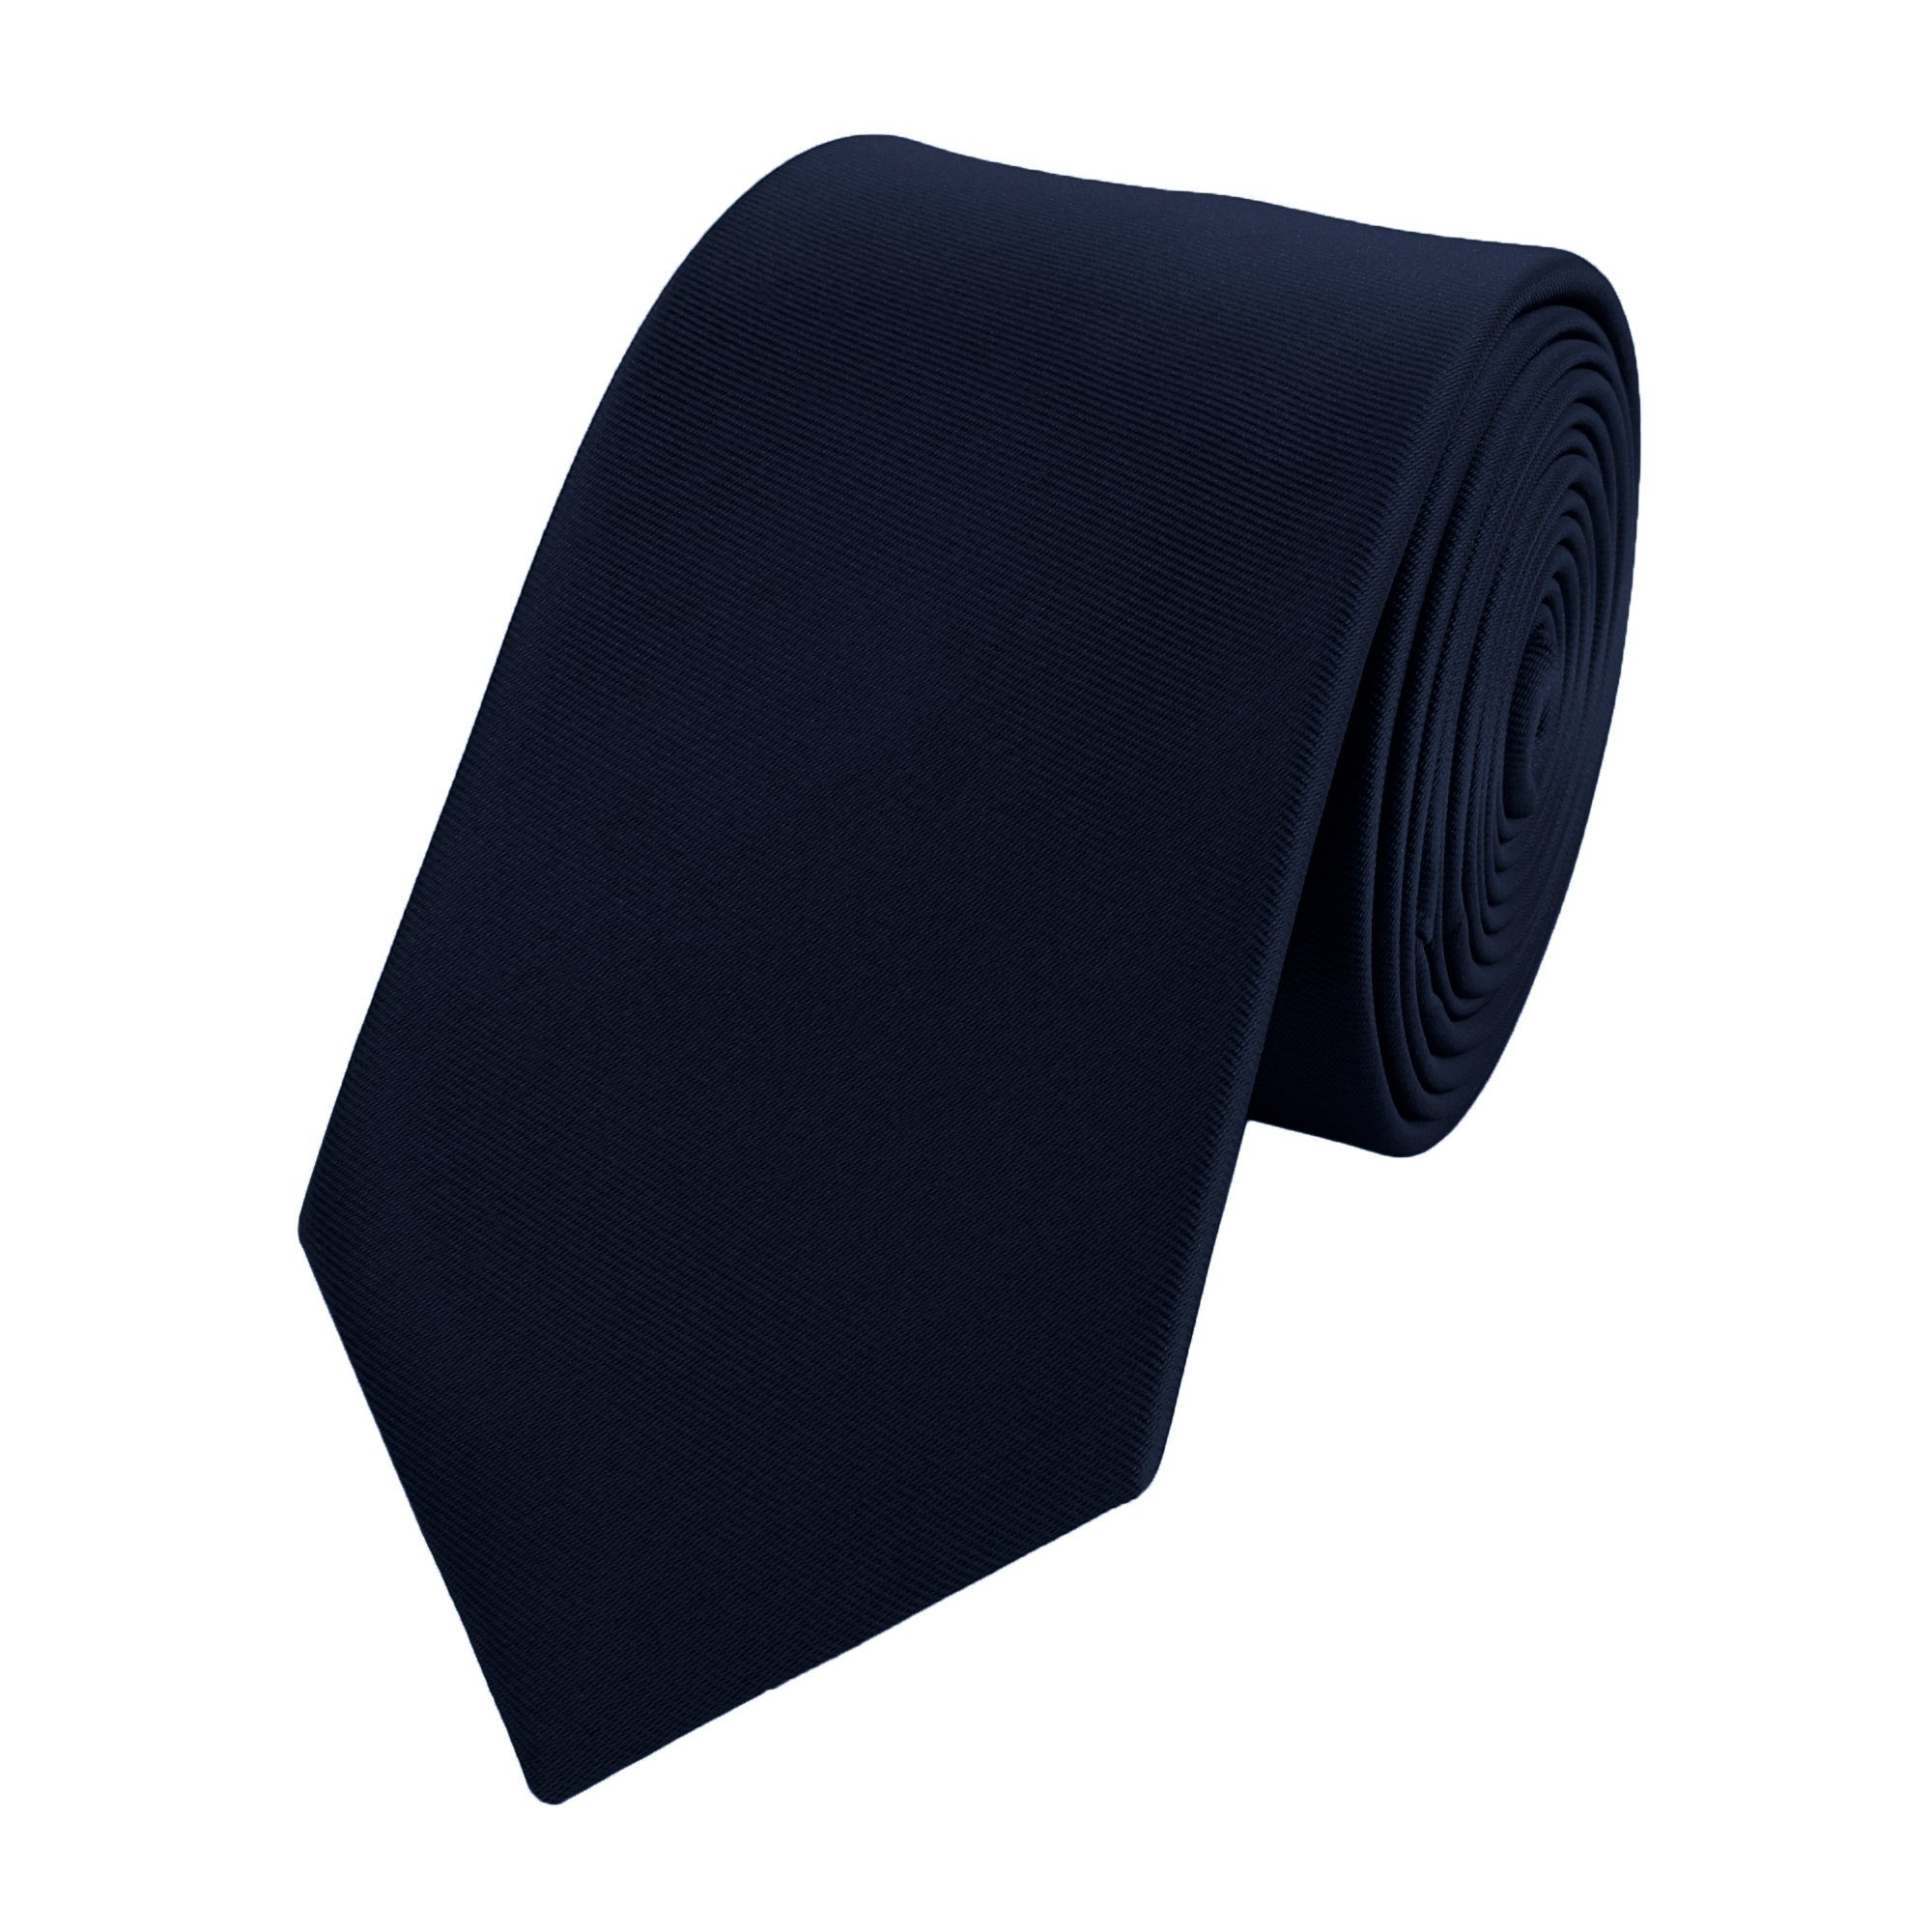 Beliebte Produkte Fabio Farini verschiedene Black 6cm Schmal Herren Unifarben) (6cm), - Schwarzblau Krawatte in Schlips Blaue Box, Blue Blautöne Krawatte Uni Männer Einfarbig - (ohne